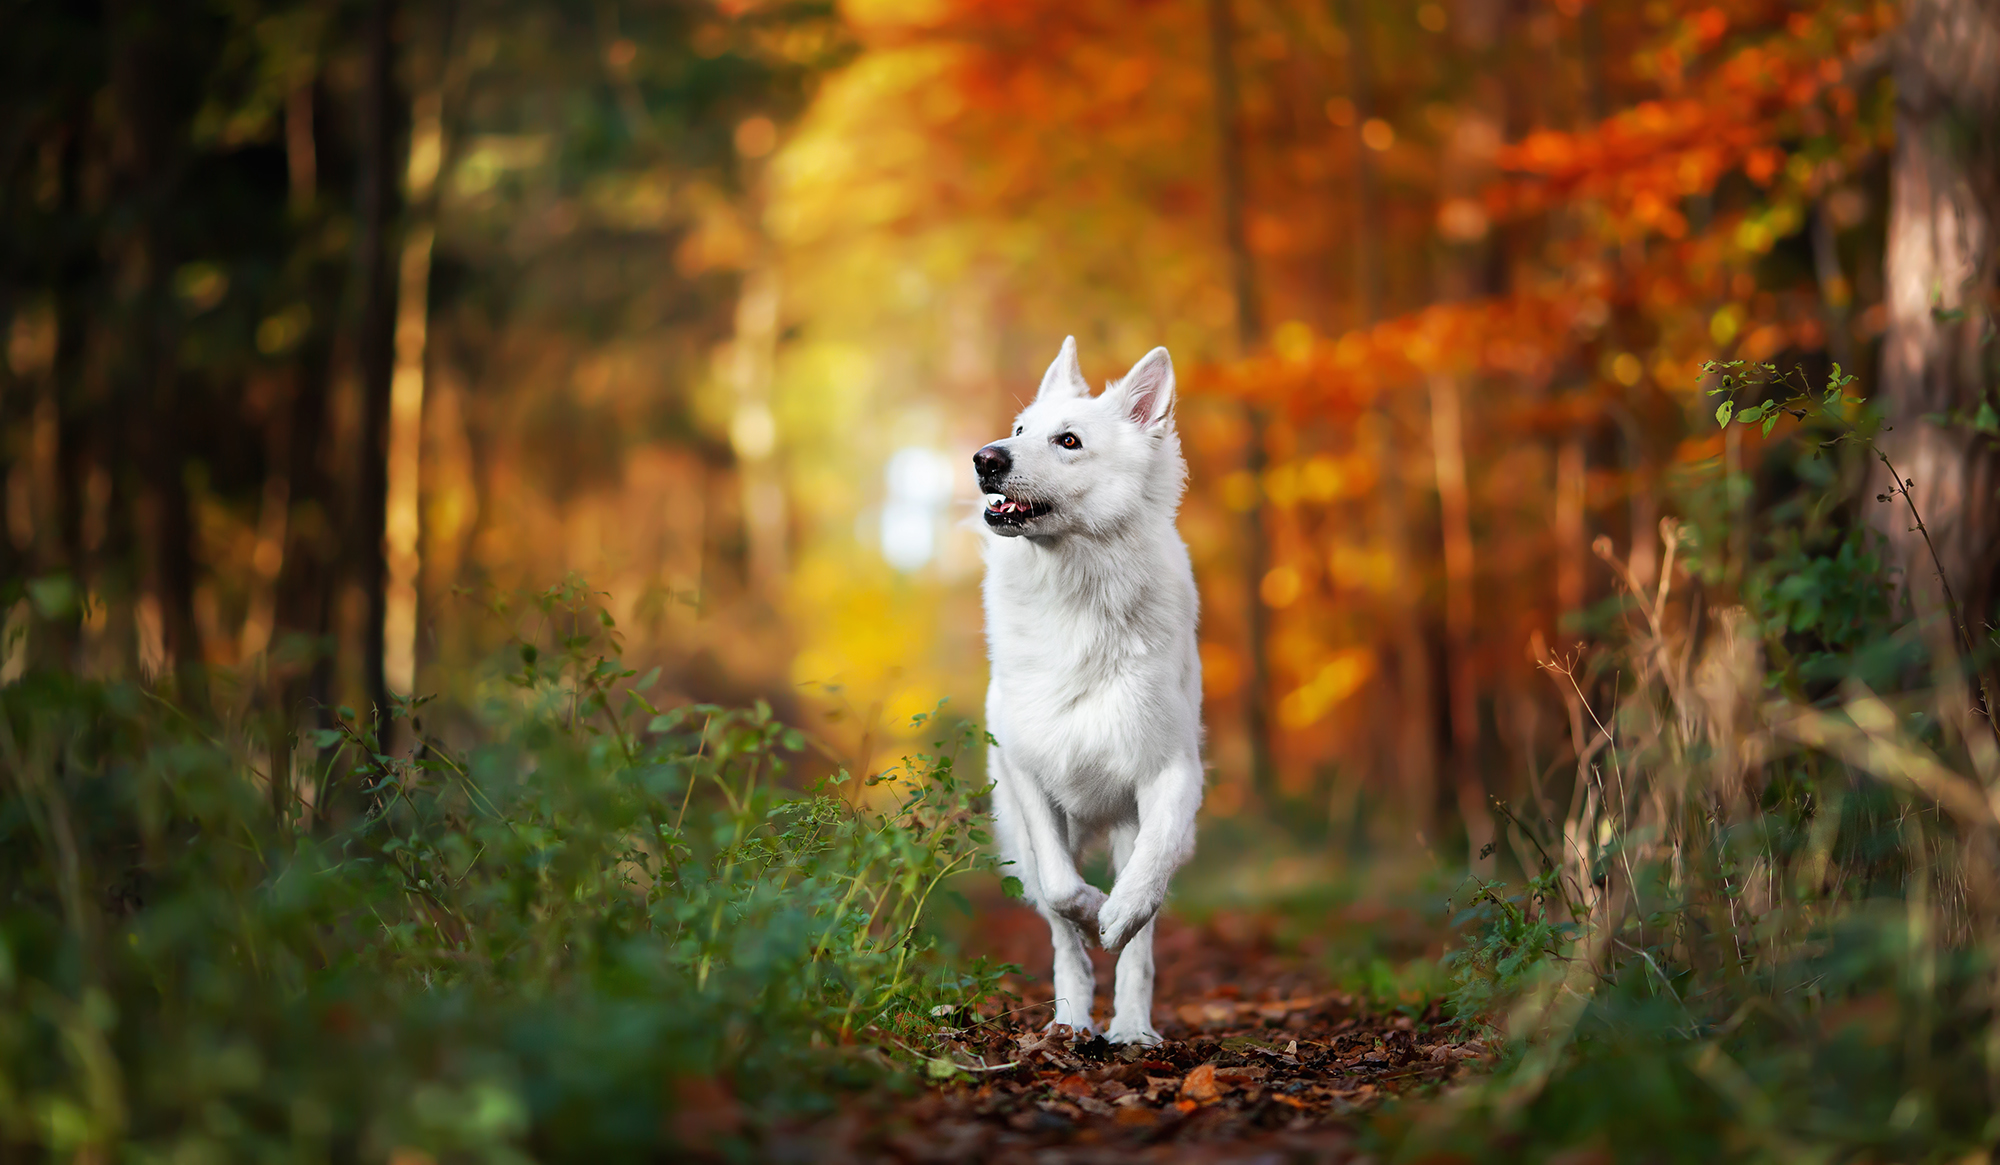 Tierfotografin Coopergrafie und weißer Schäferhund